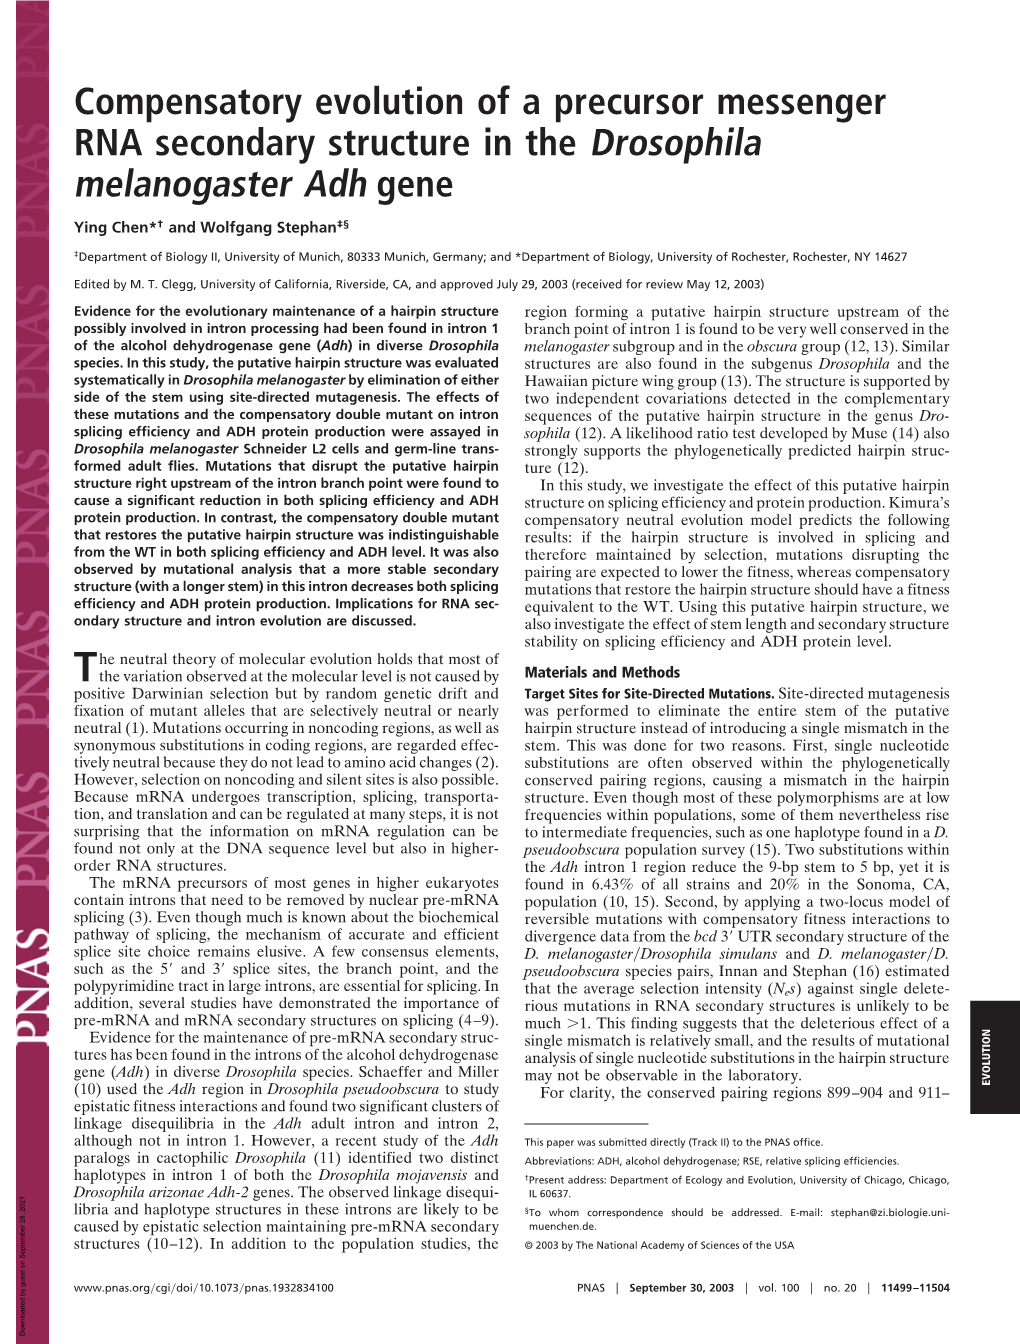 Compensatory Evolution of a Precursor Messenger RNA Secondary Structure in the Drosophila Melanogaster Adh Gene